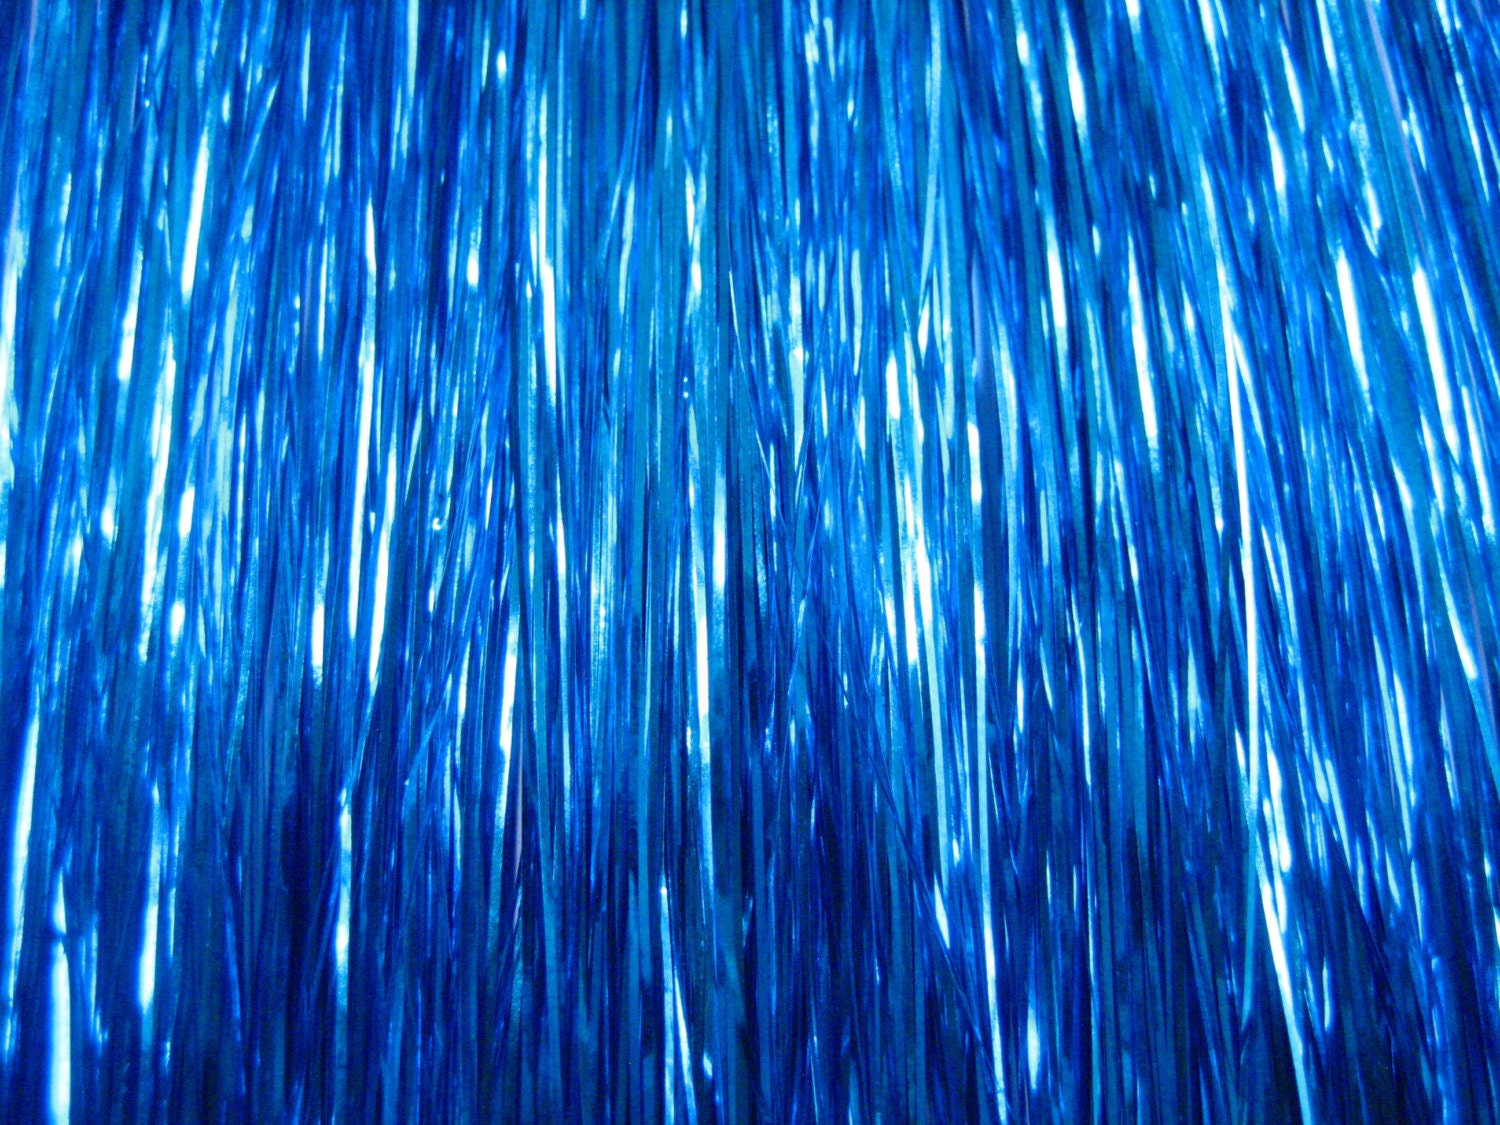 Blue hair tinsel - wide 9